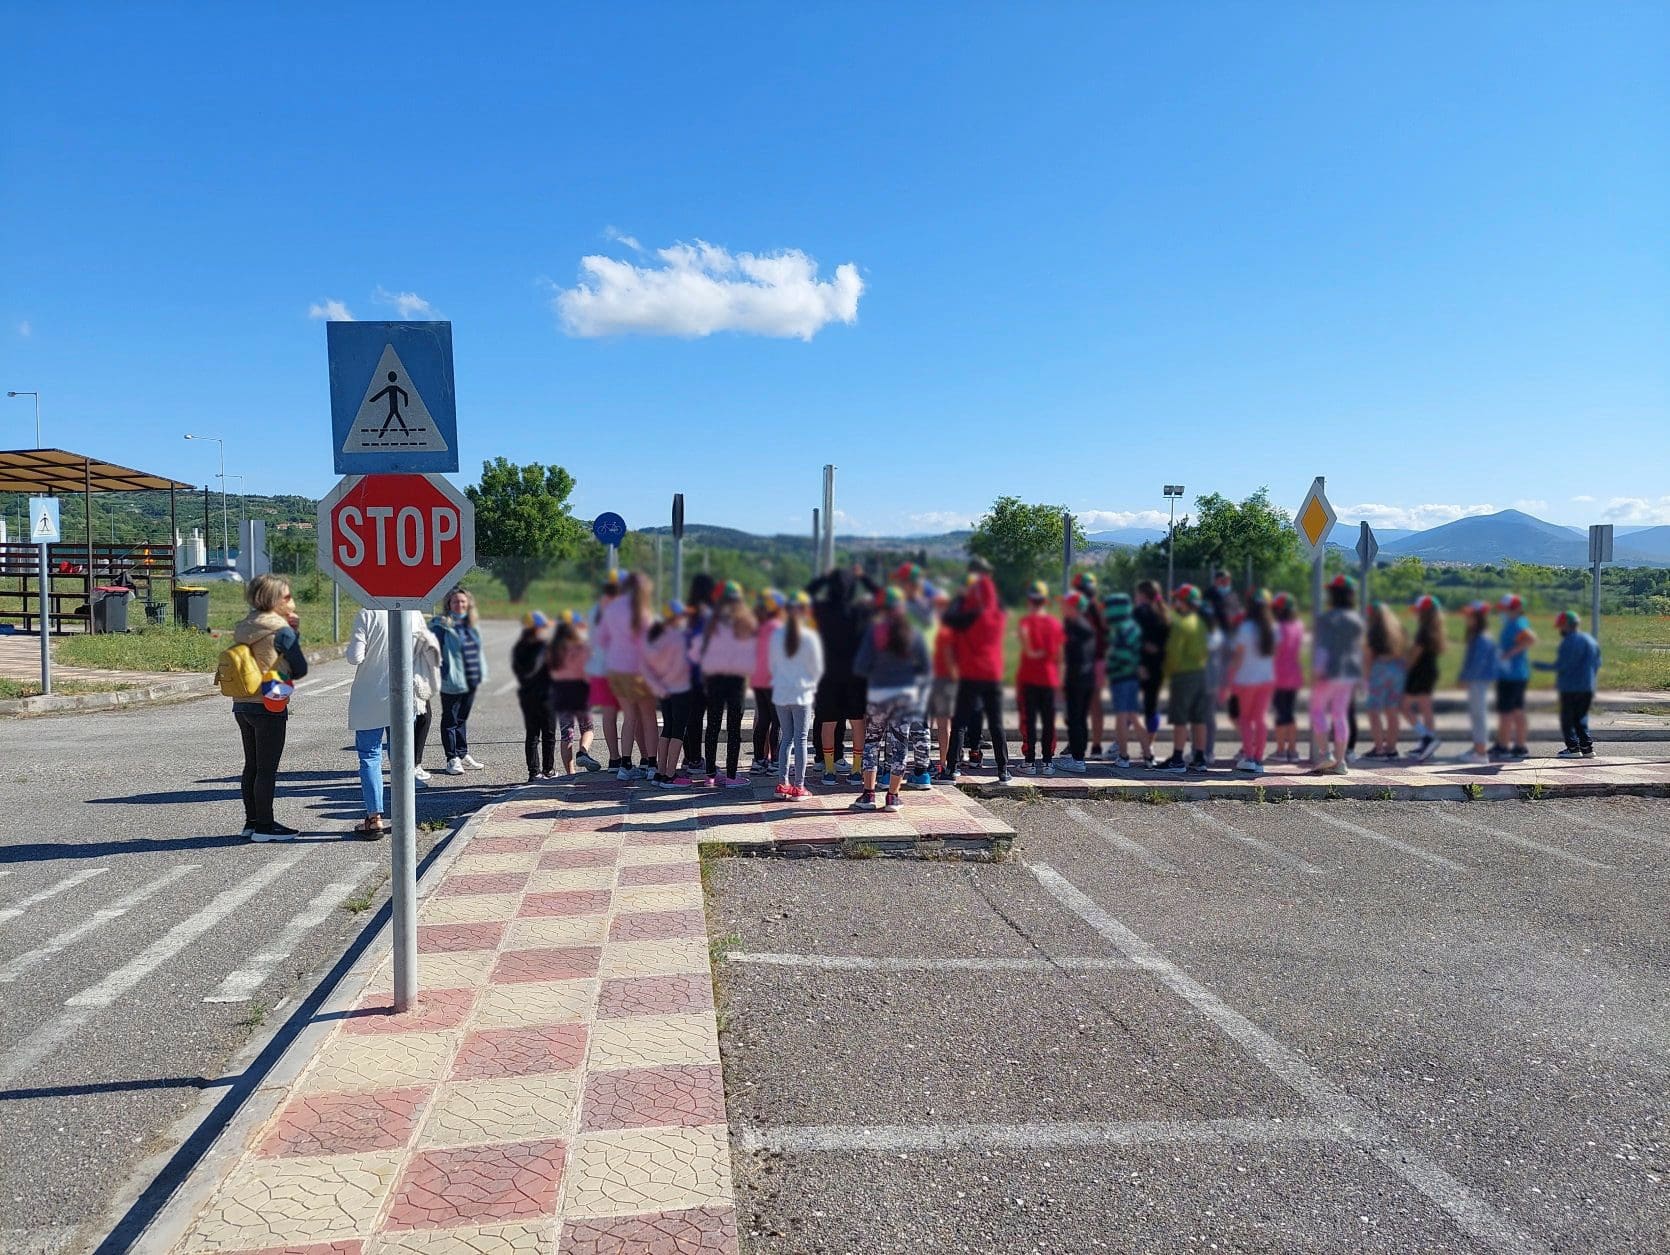 Δήμος Κοζάνης: Μικροί μαθητές πλημμύρισαν το Πάρκο Κυκλοφοριακής Αγωγής! (βίντεο)